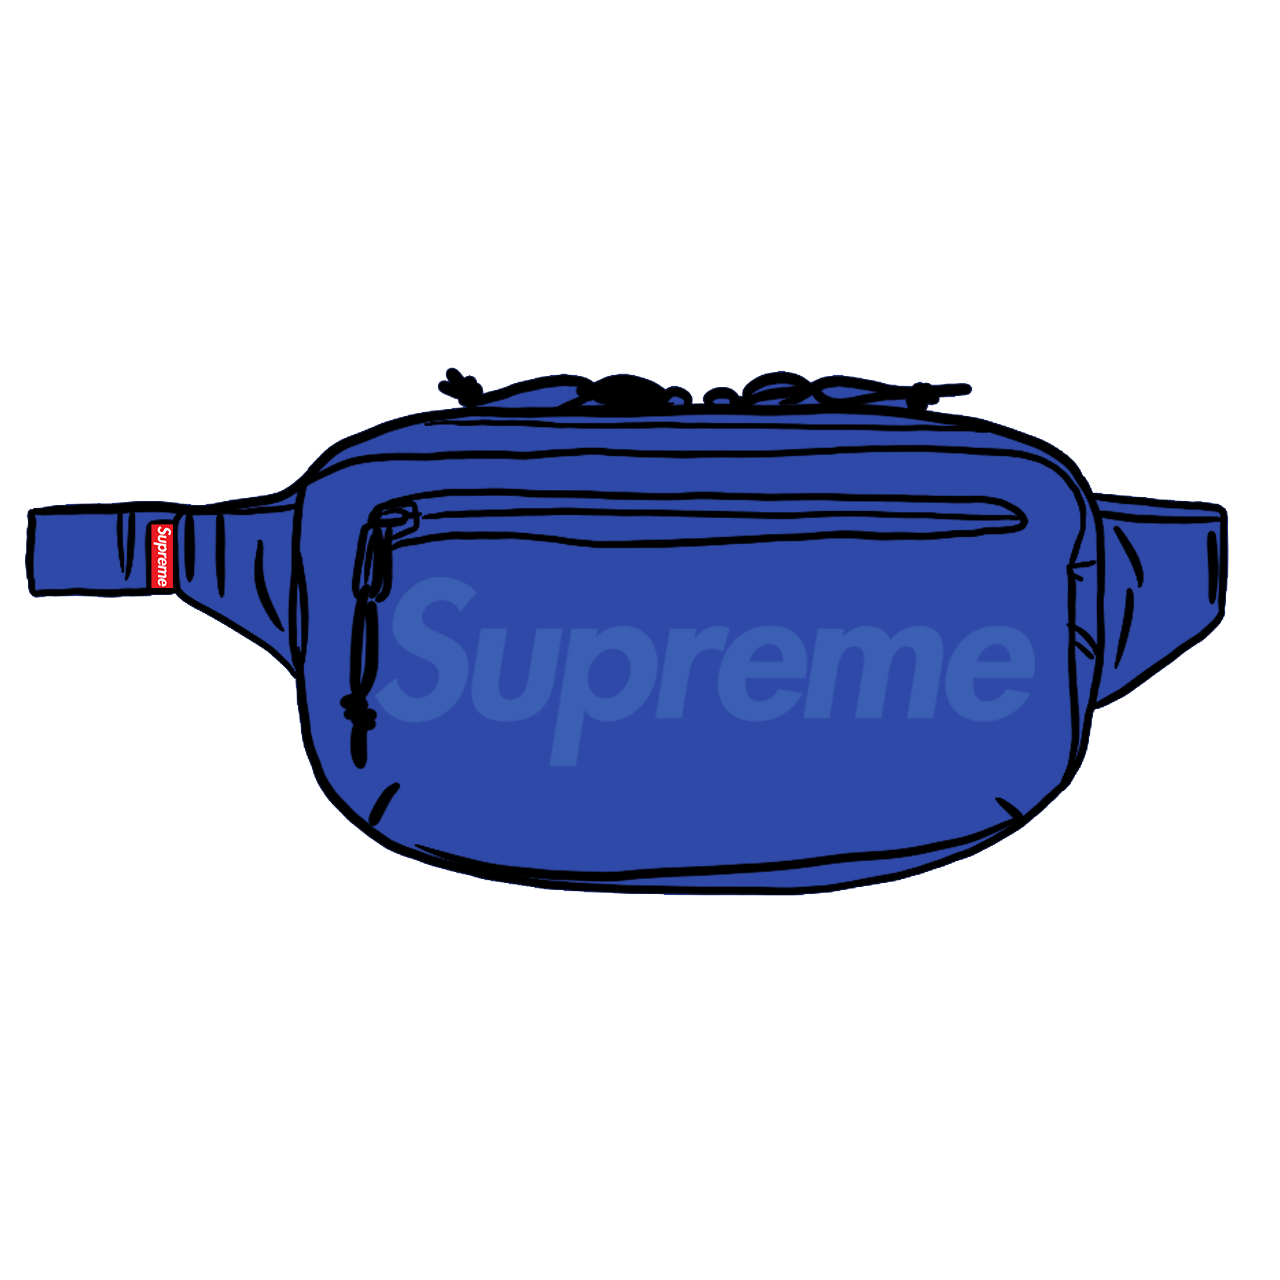 Supreme Waist Bag (SS18) Royal for Women